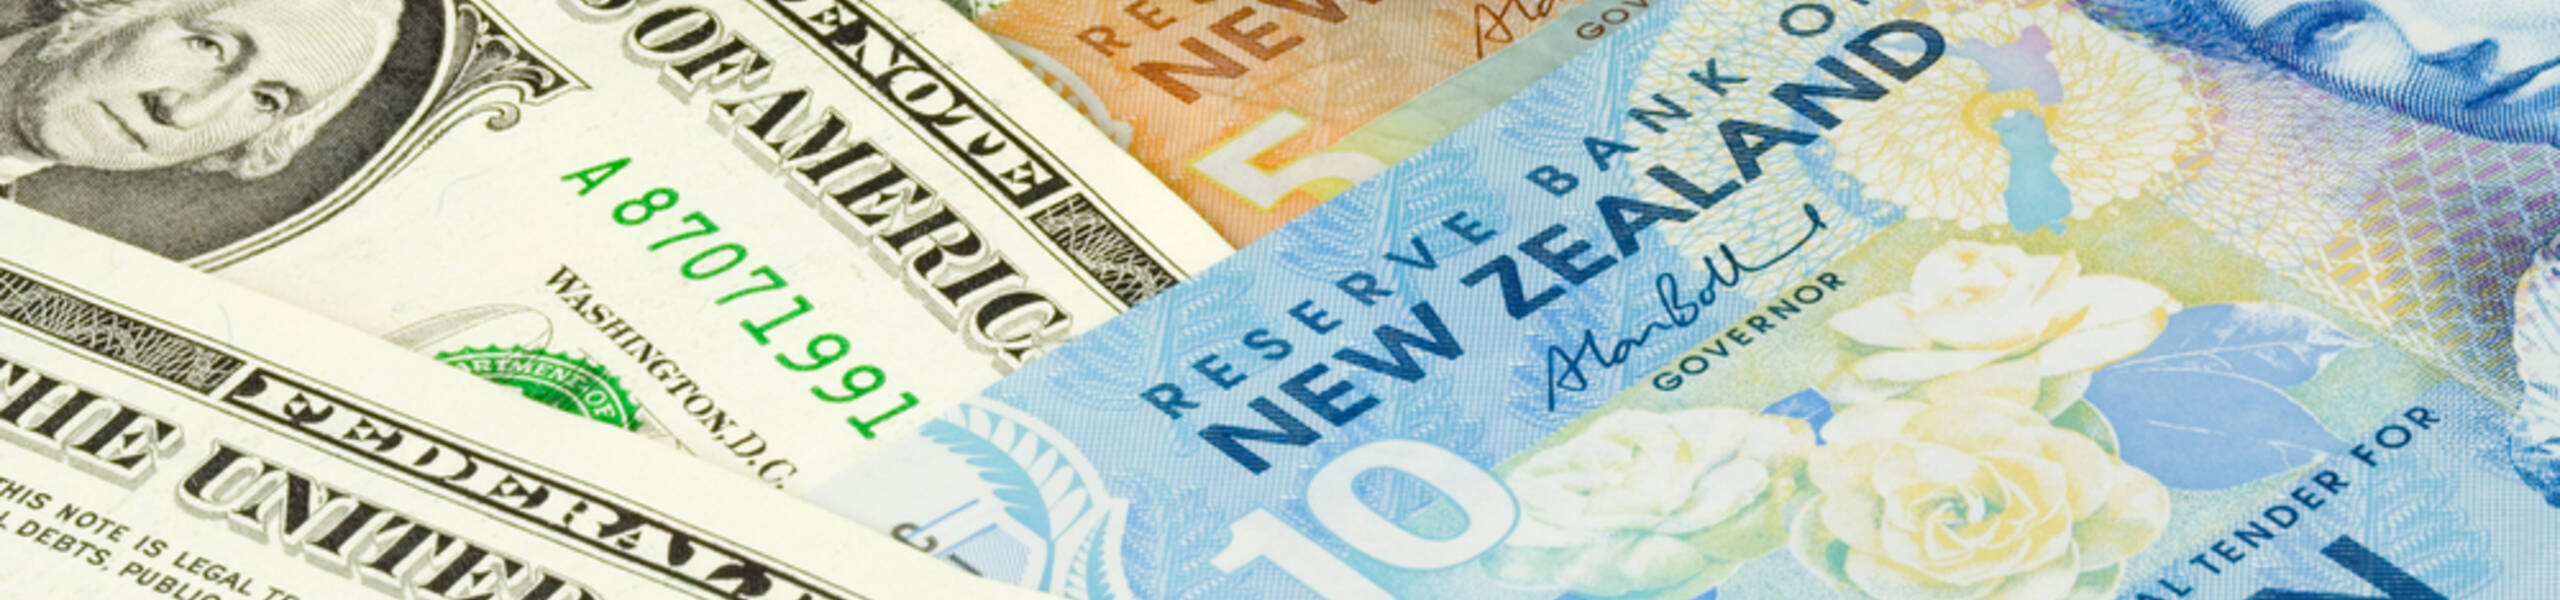 Kế hoạch giao dịch cặp ngoại tệ NZDUSD ngày 10/04/2019